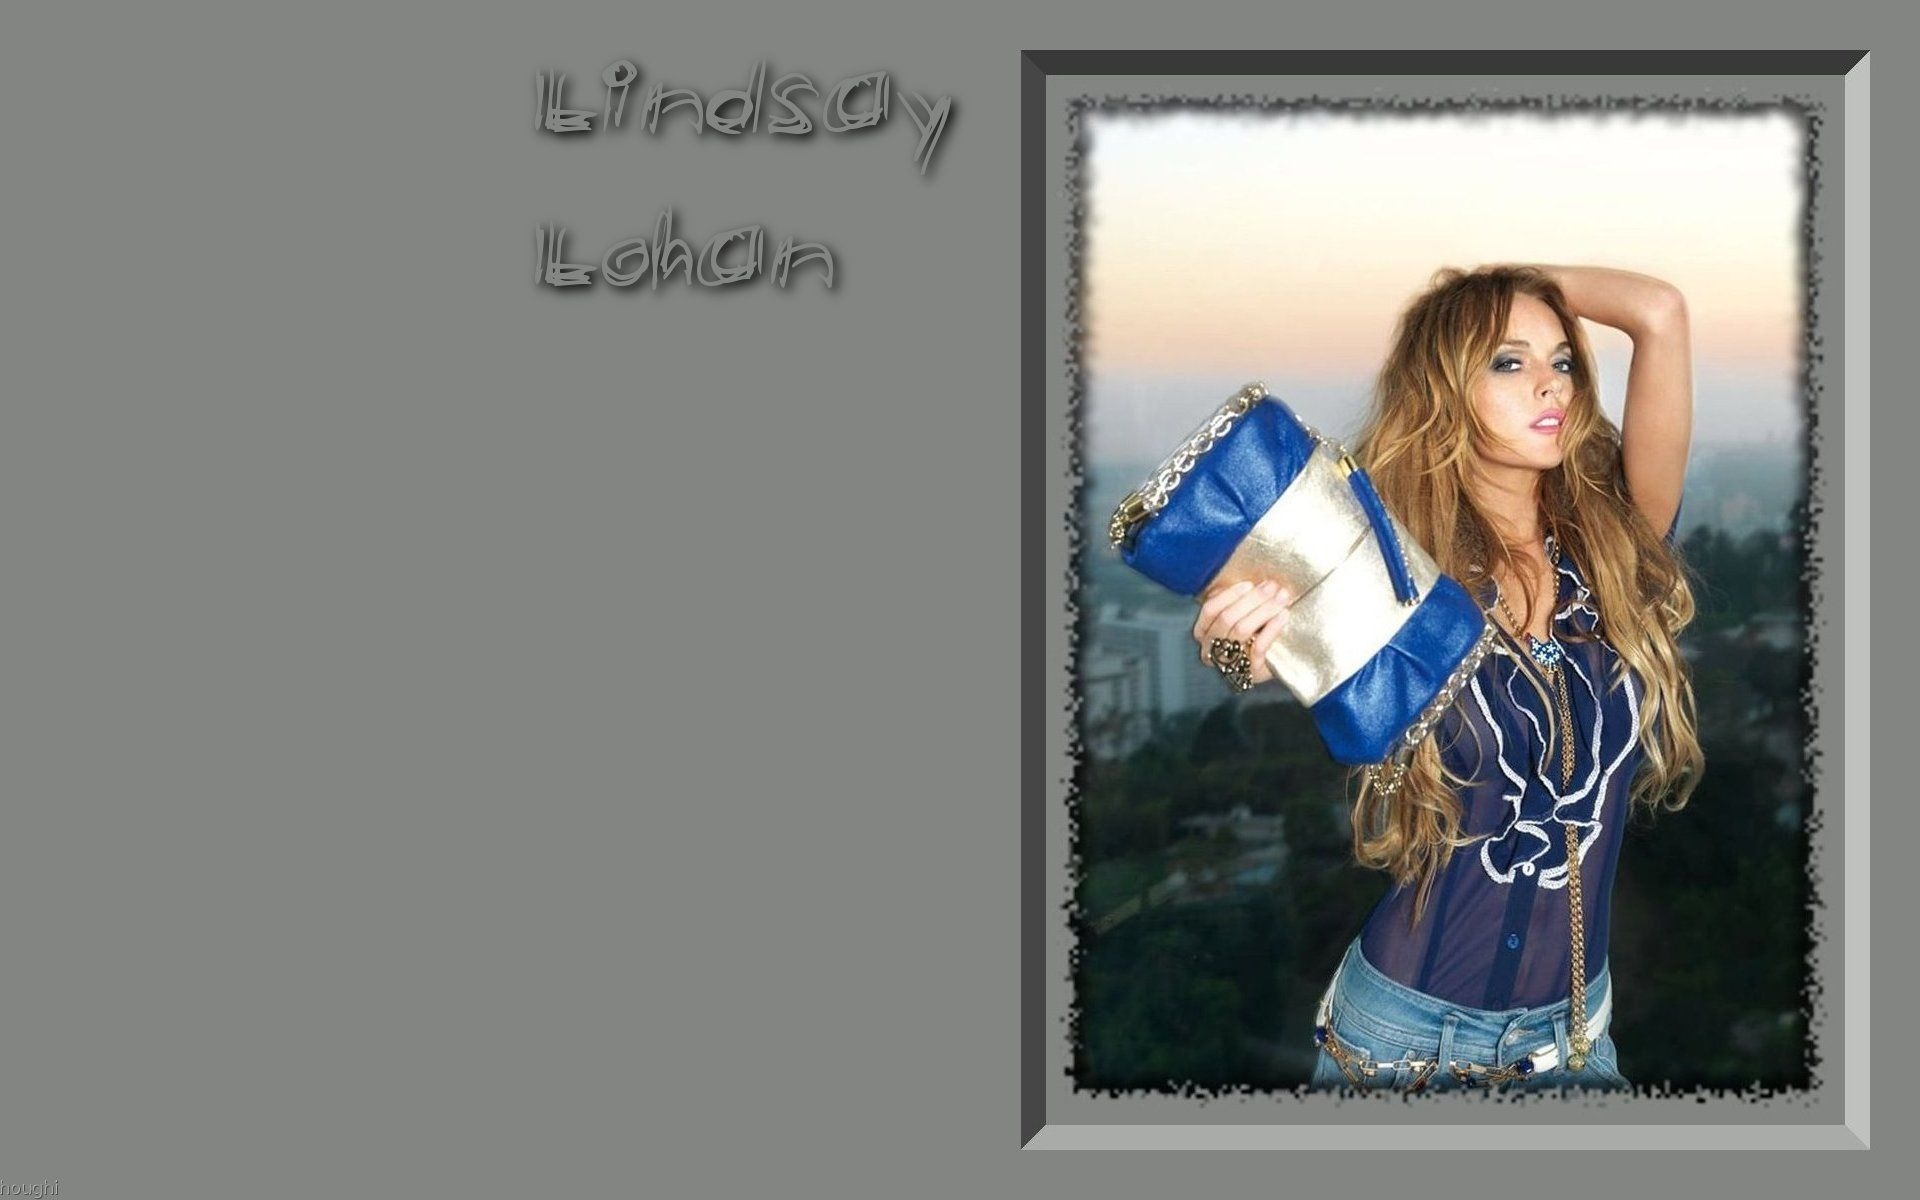 Lindsay Lohan 林賽·羅韓 美女壁紙 #18 - 1920x1200